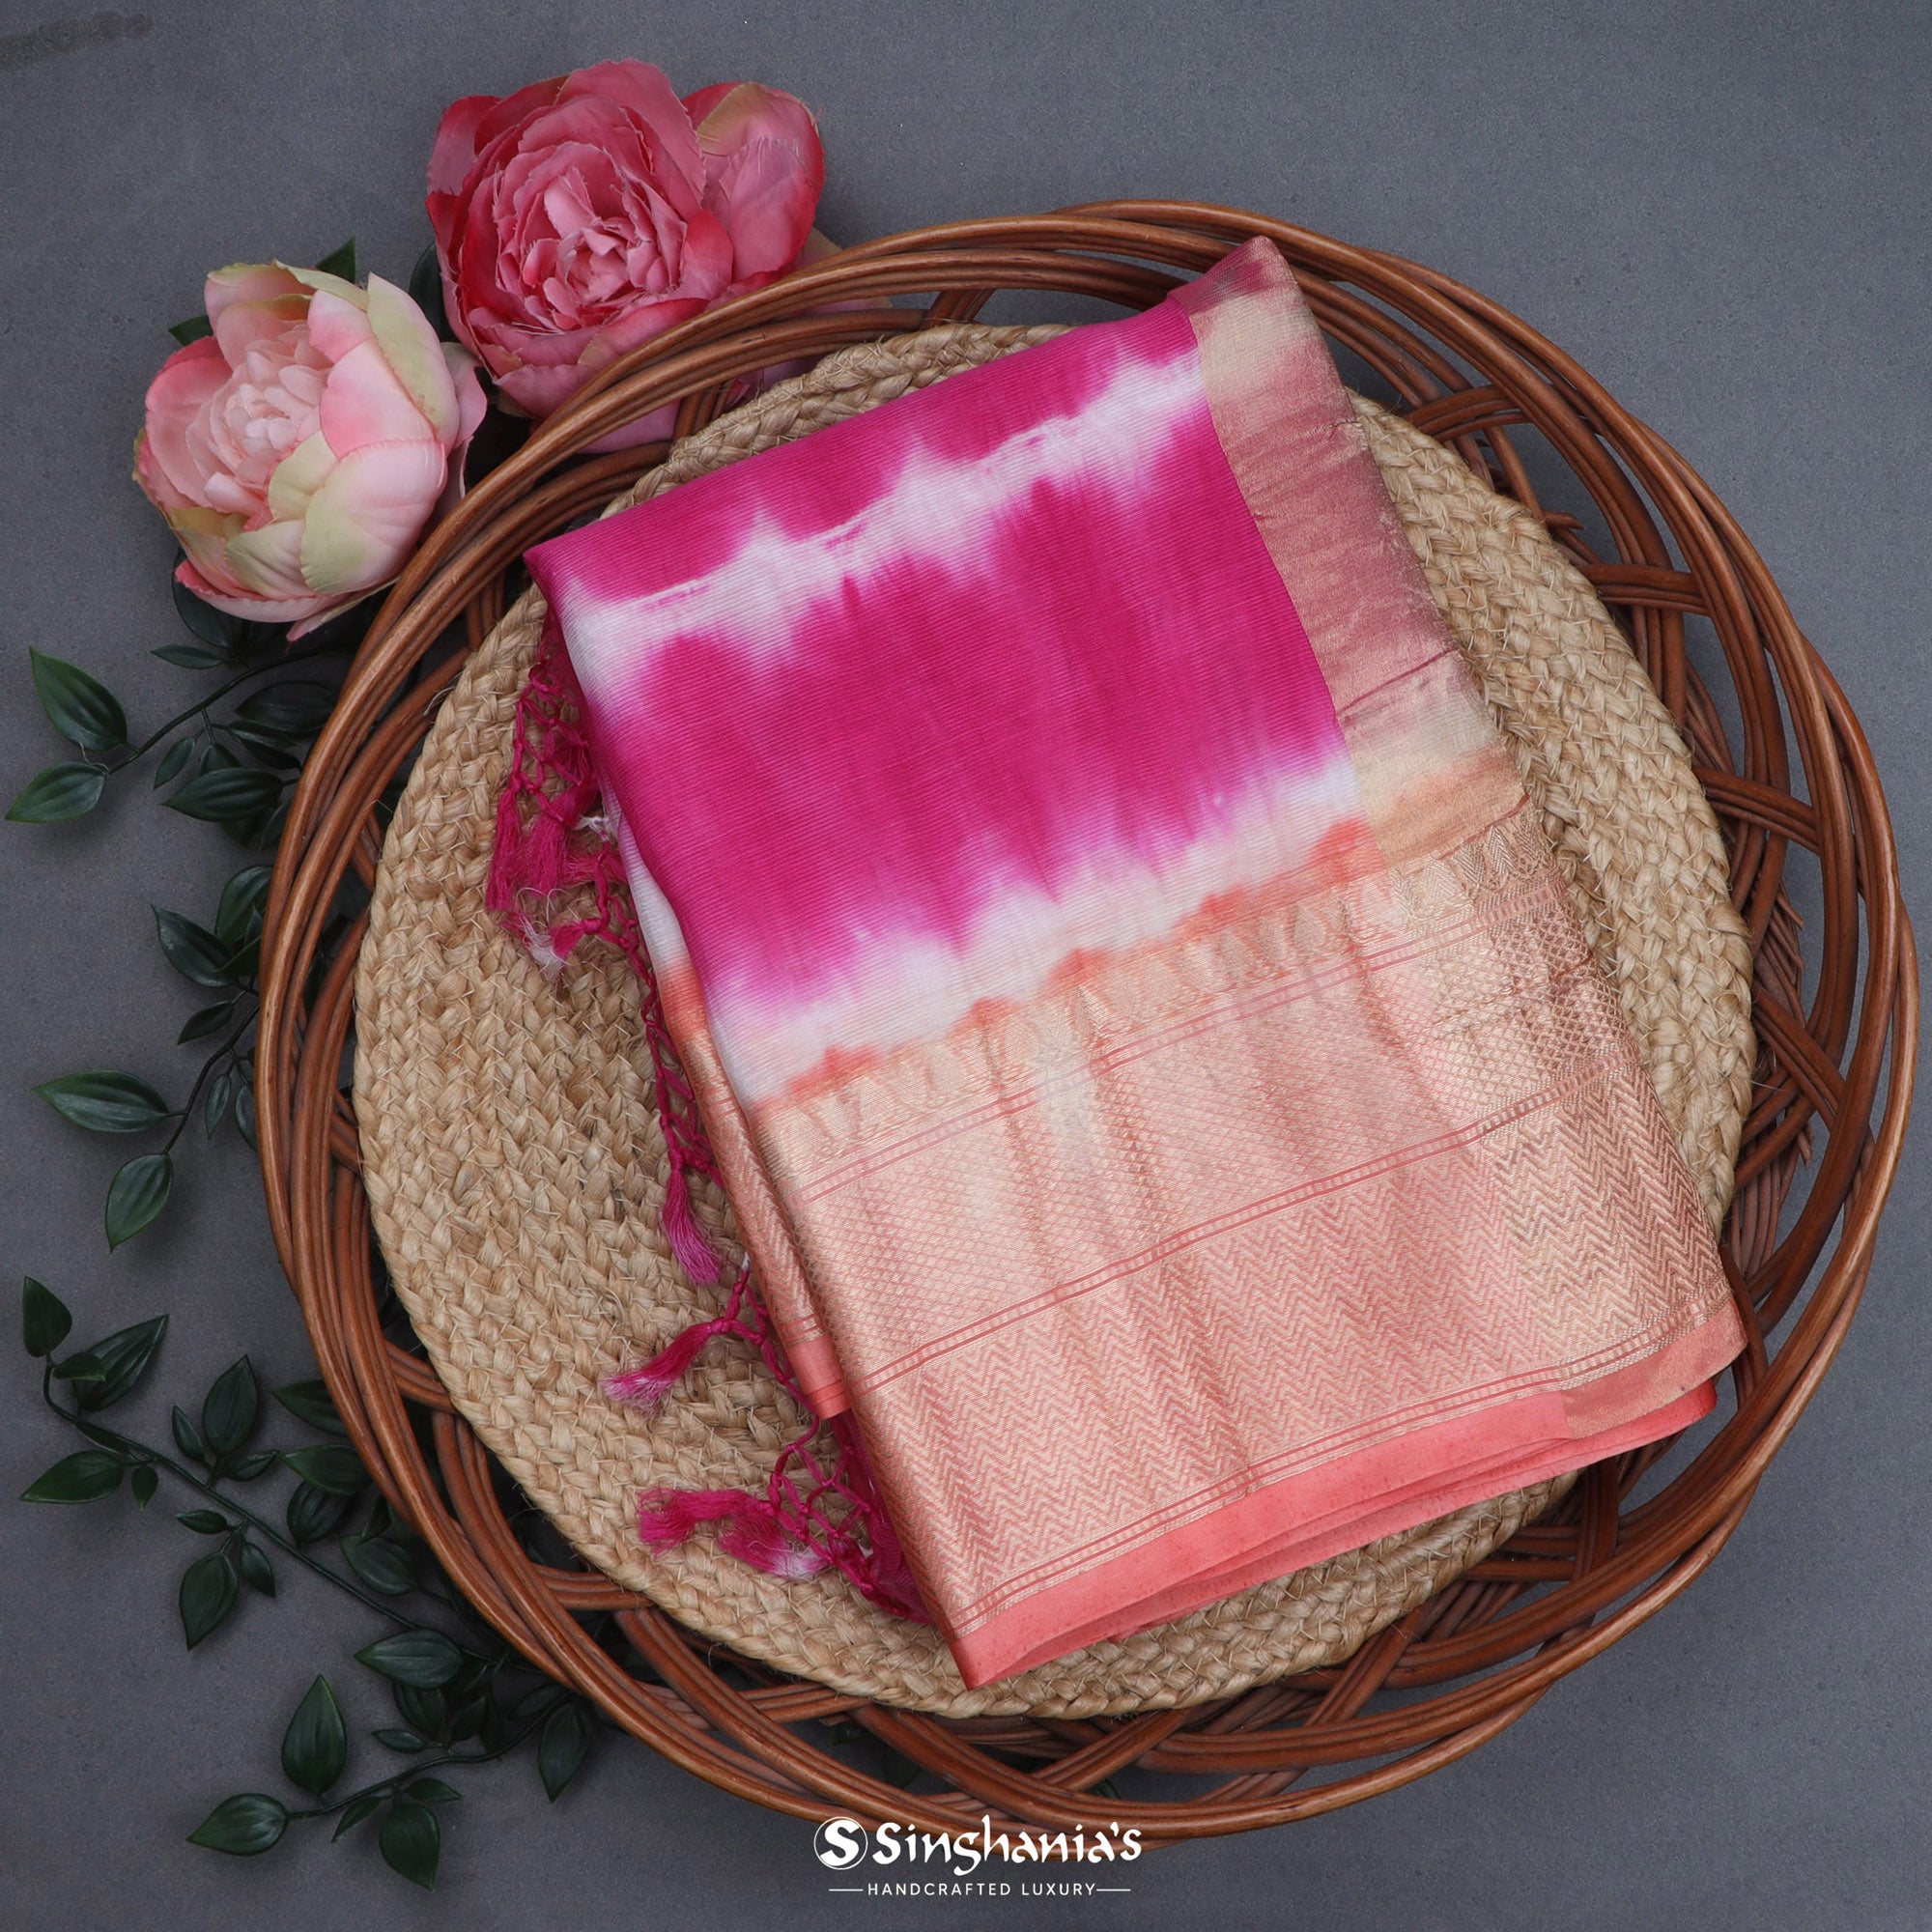 Flamingo Pink Maheshwari Silk Saree With Printed Design